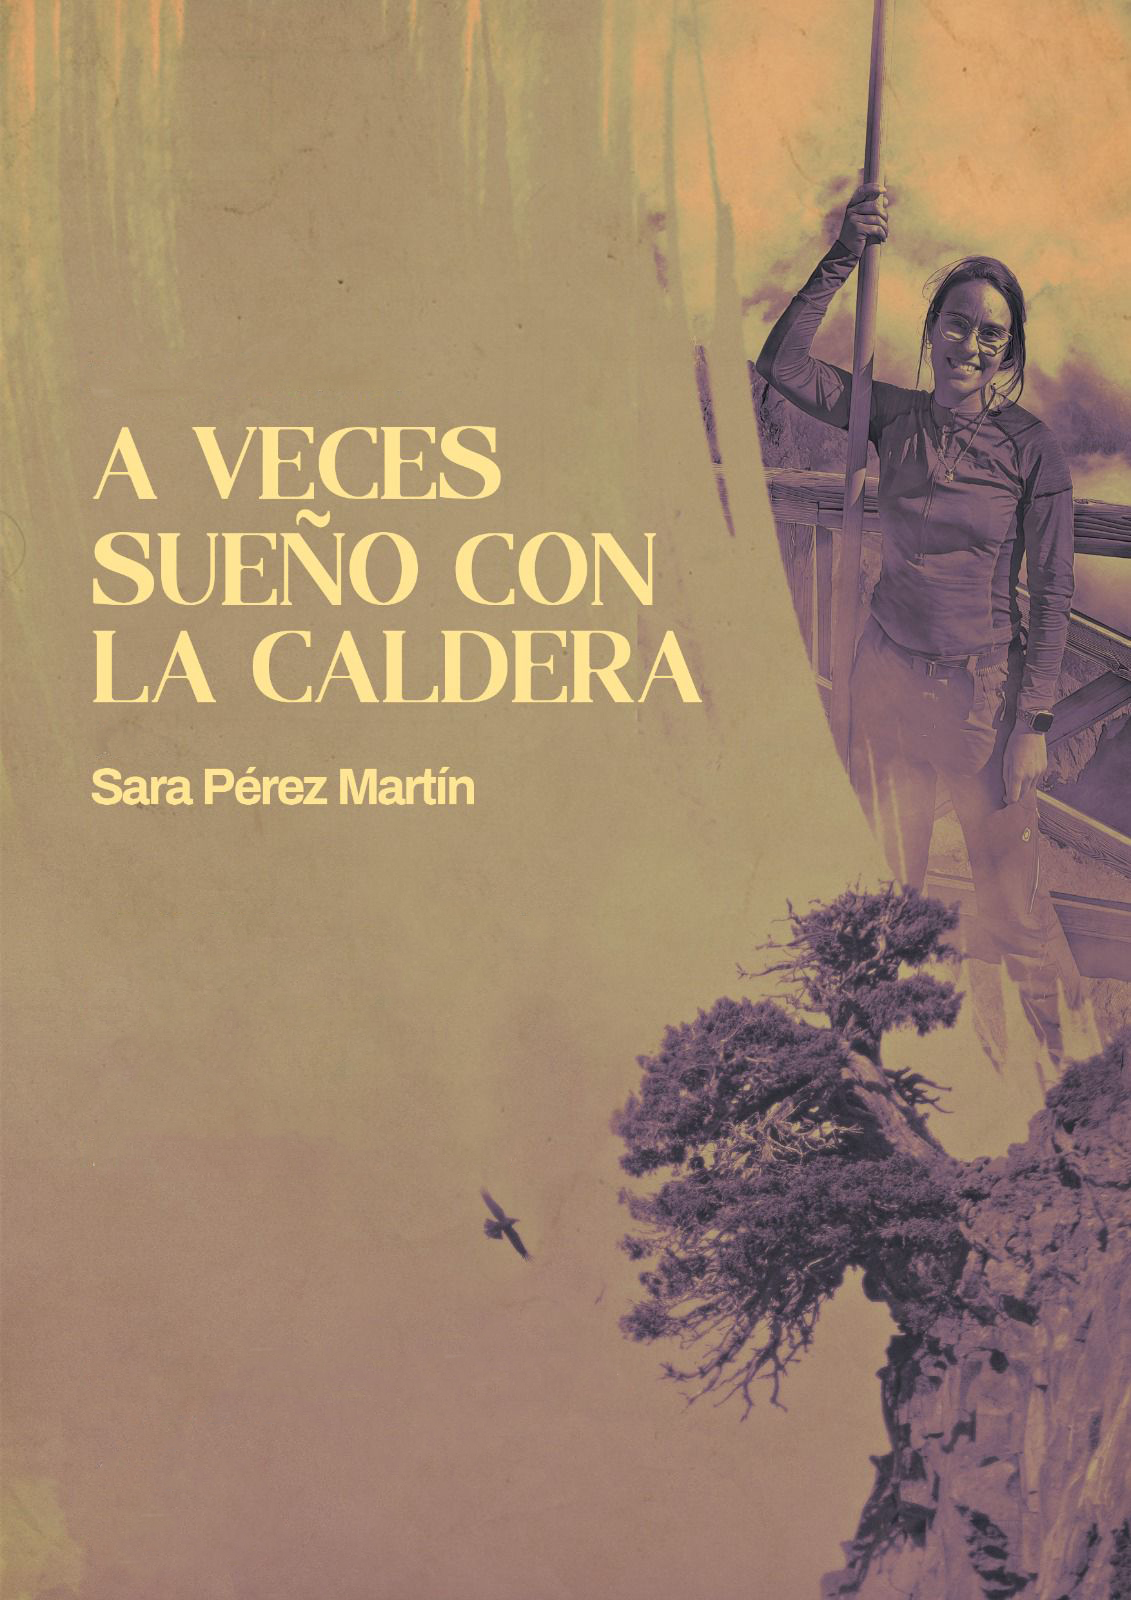 Presentación del poemario "A veces sueño con la Caldera", de Sara Pérez Martín